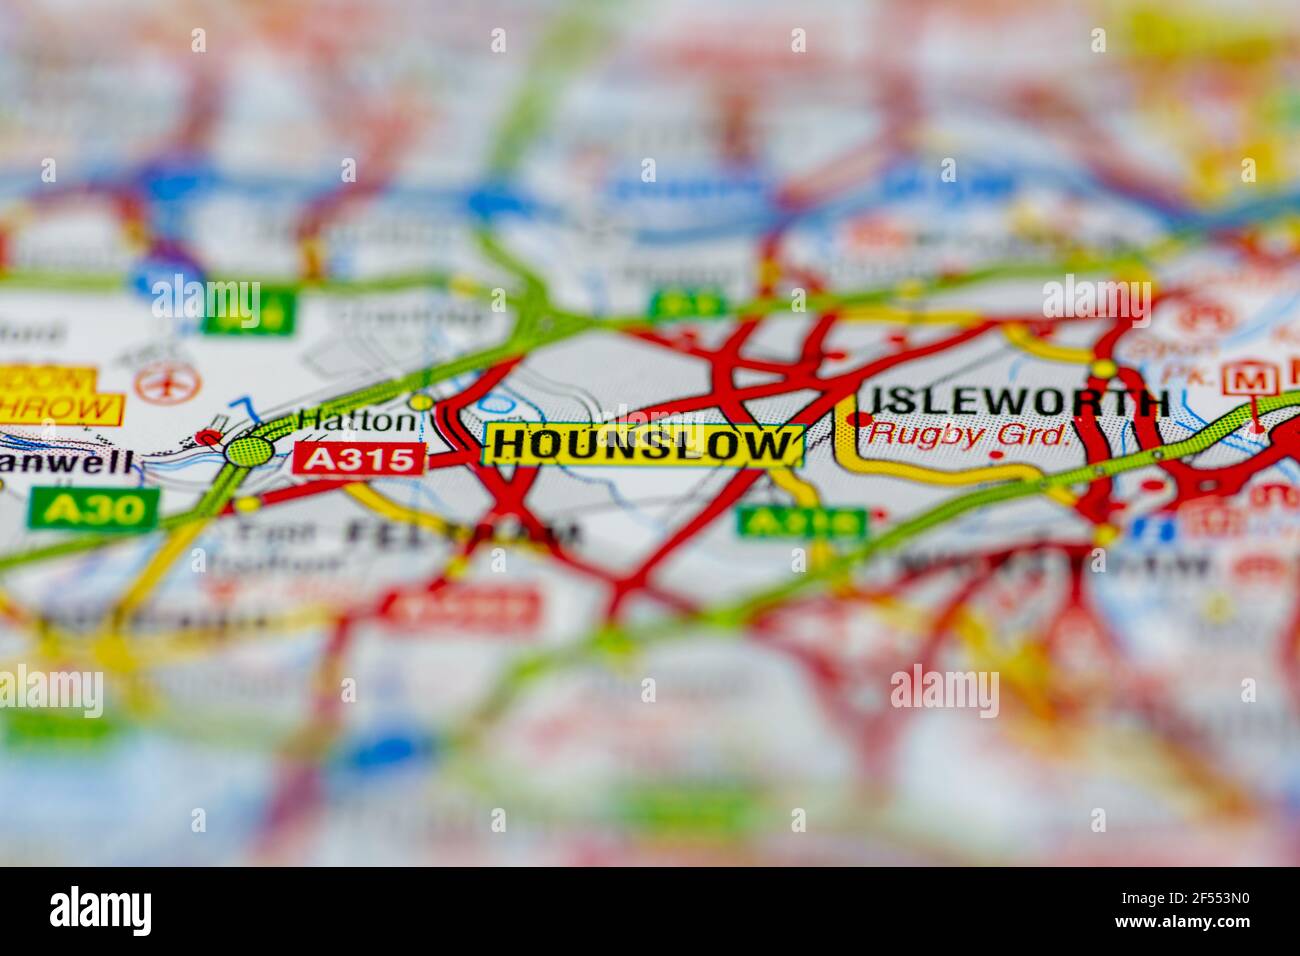 Hounslow affiché sur une carte géographique ou une carte routière Banque D'Images